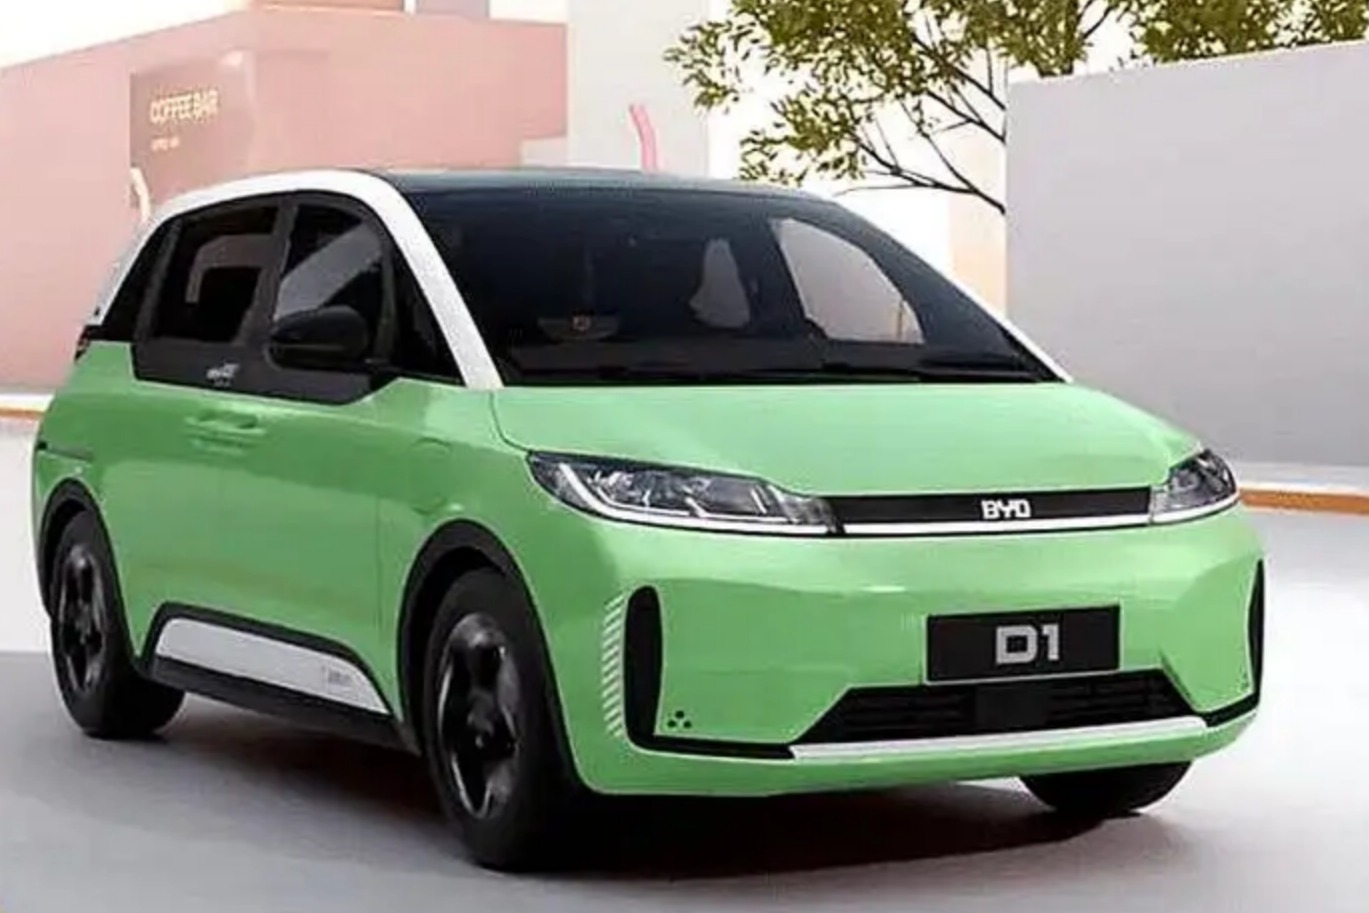 比亚迪D1新增2022款舒适版车型正式上市，官方指导价15.78万